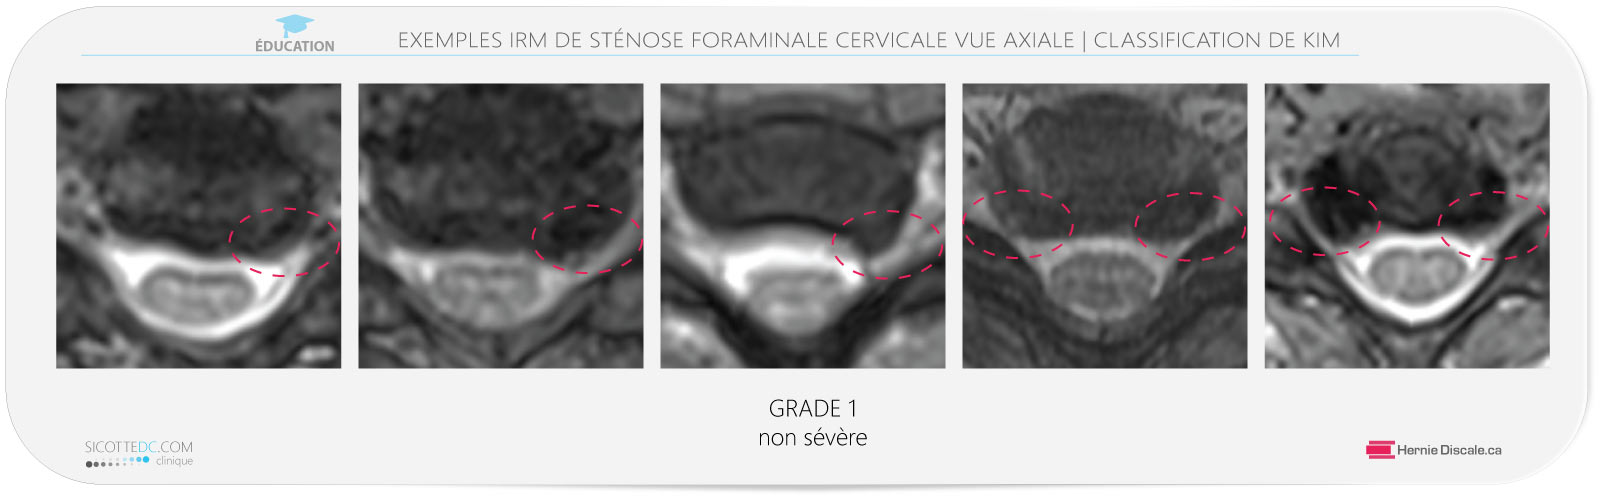 Sténose foraminale cervicale vue axiale IRM grade 1. Traitement avec la méthode Cox® en flexion distraction pour hernie discale C4-C5-C6-C7.